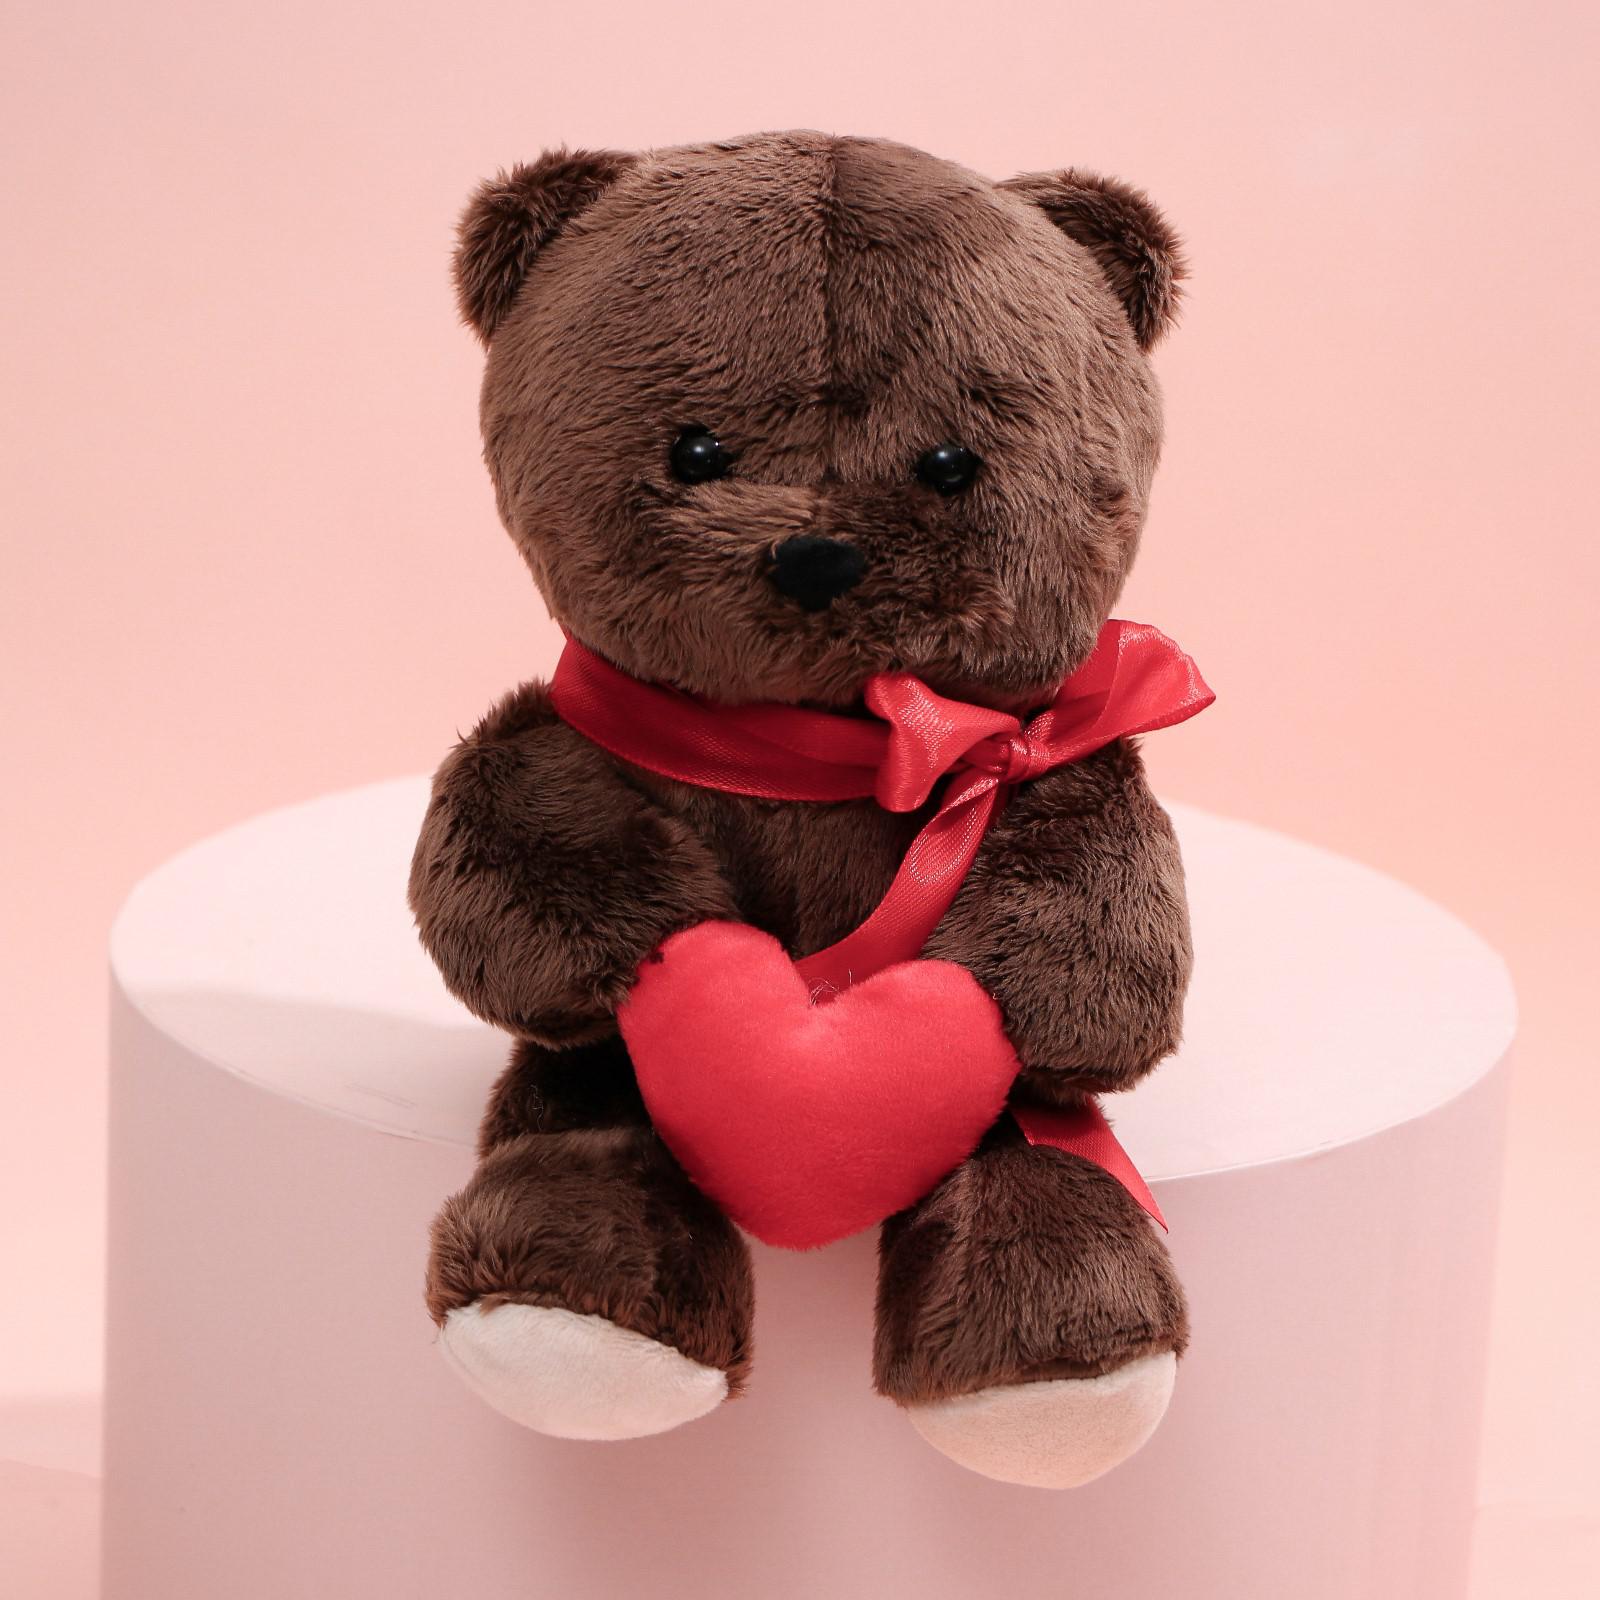 Мягкая игрушка Milo Toys Ted с сердечком мишка 25 см - фото 1